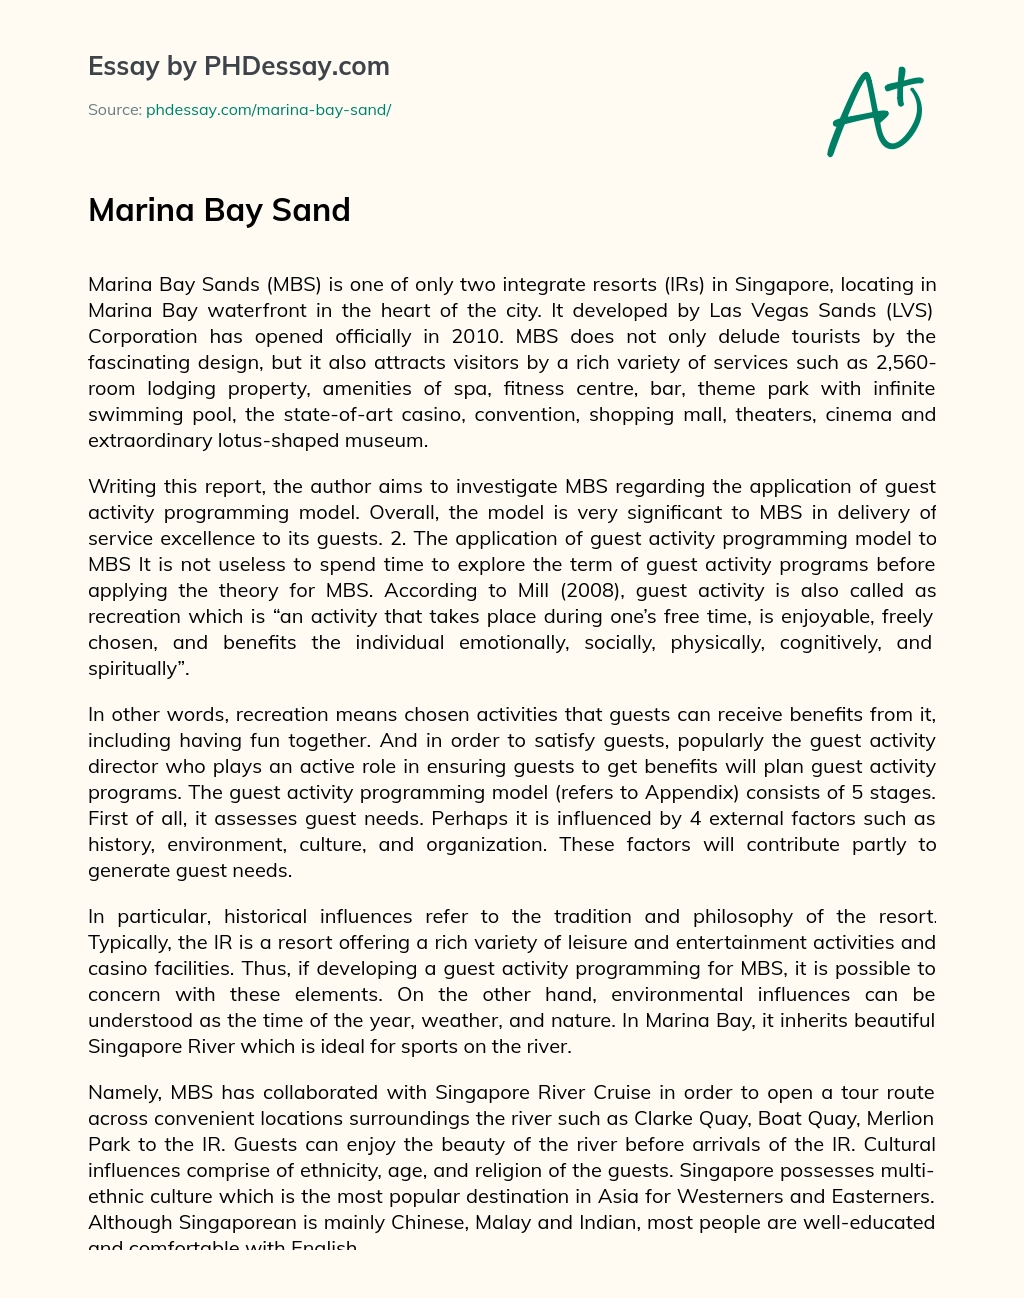 Marina Bay Sand essay